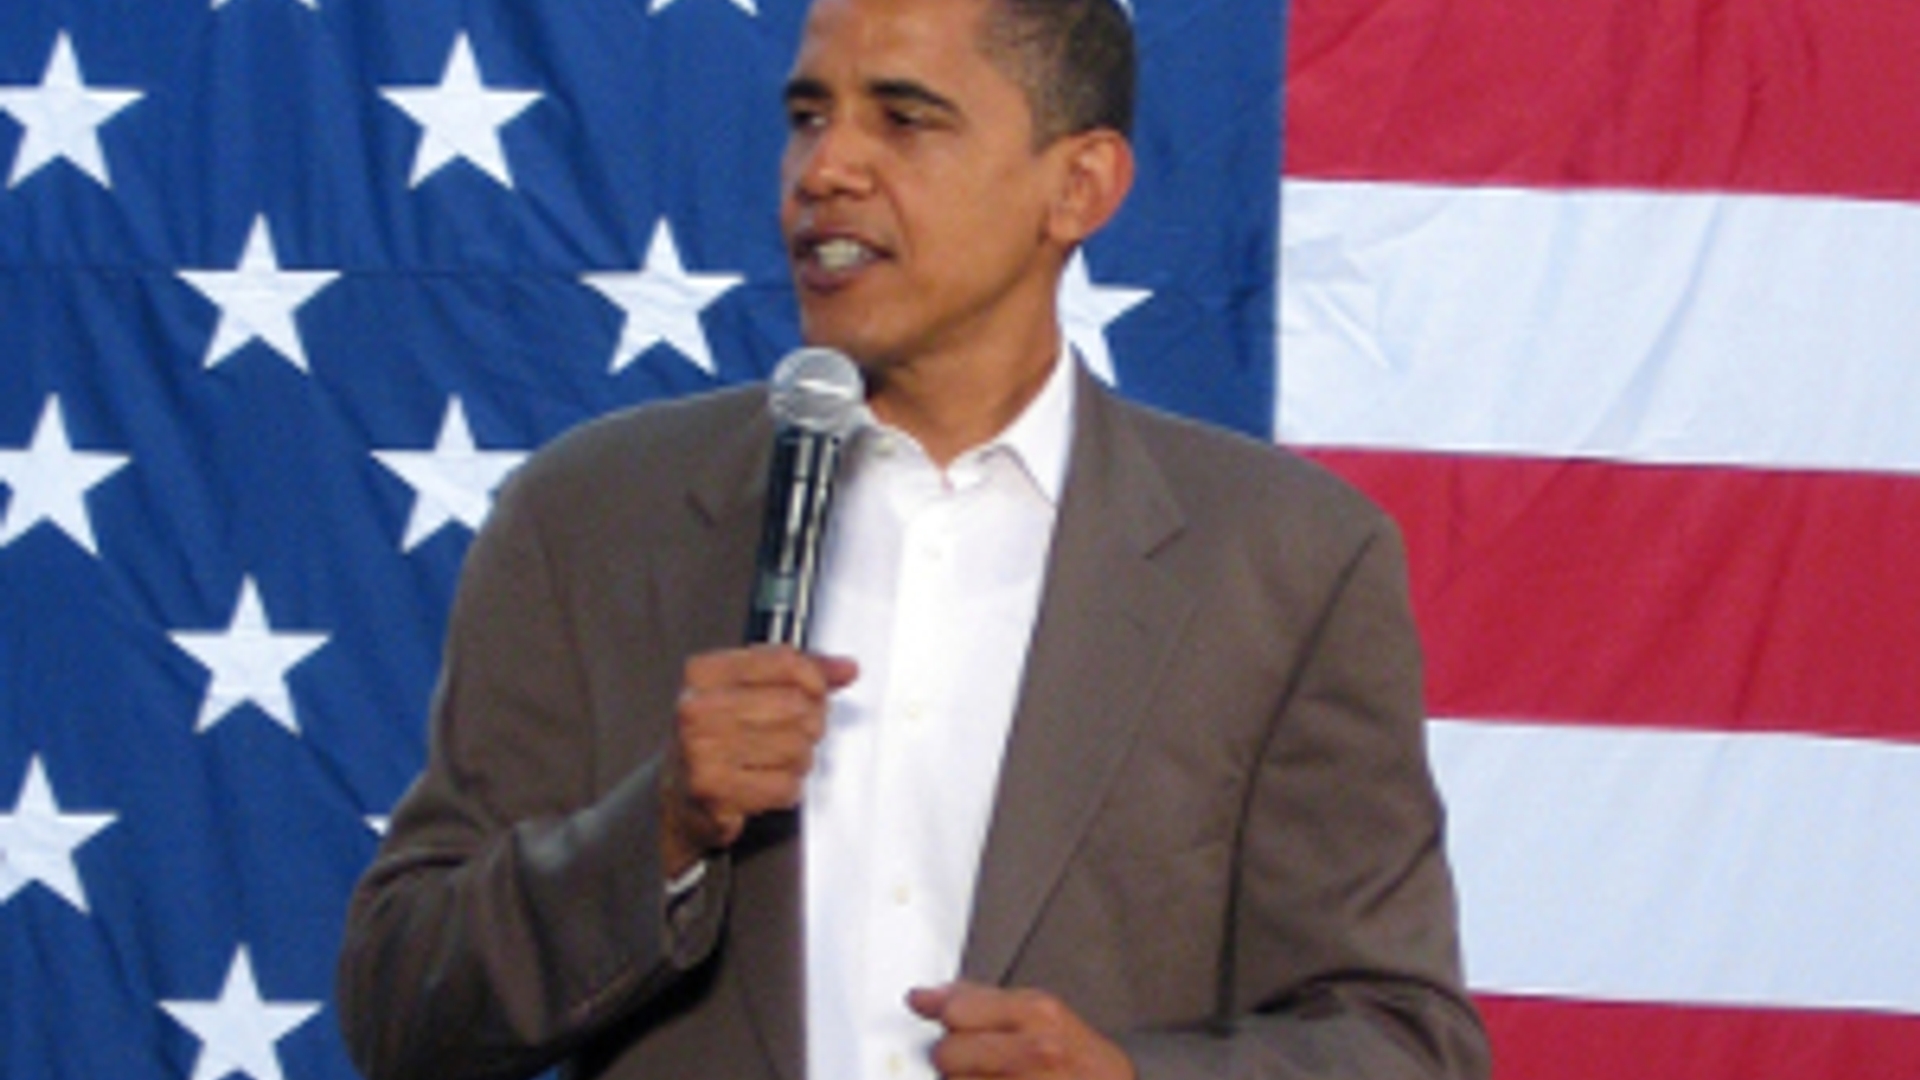 flickr_obama_voor_amerikaanse_vlag_300_02.jpg